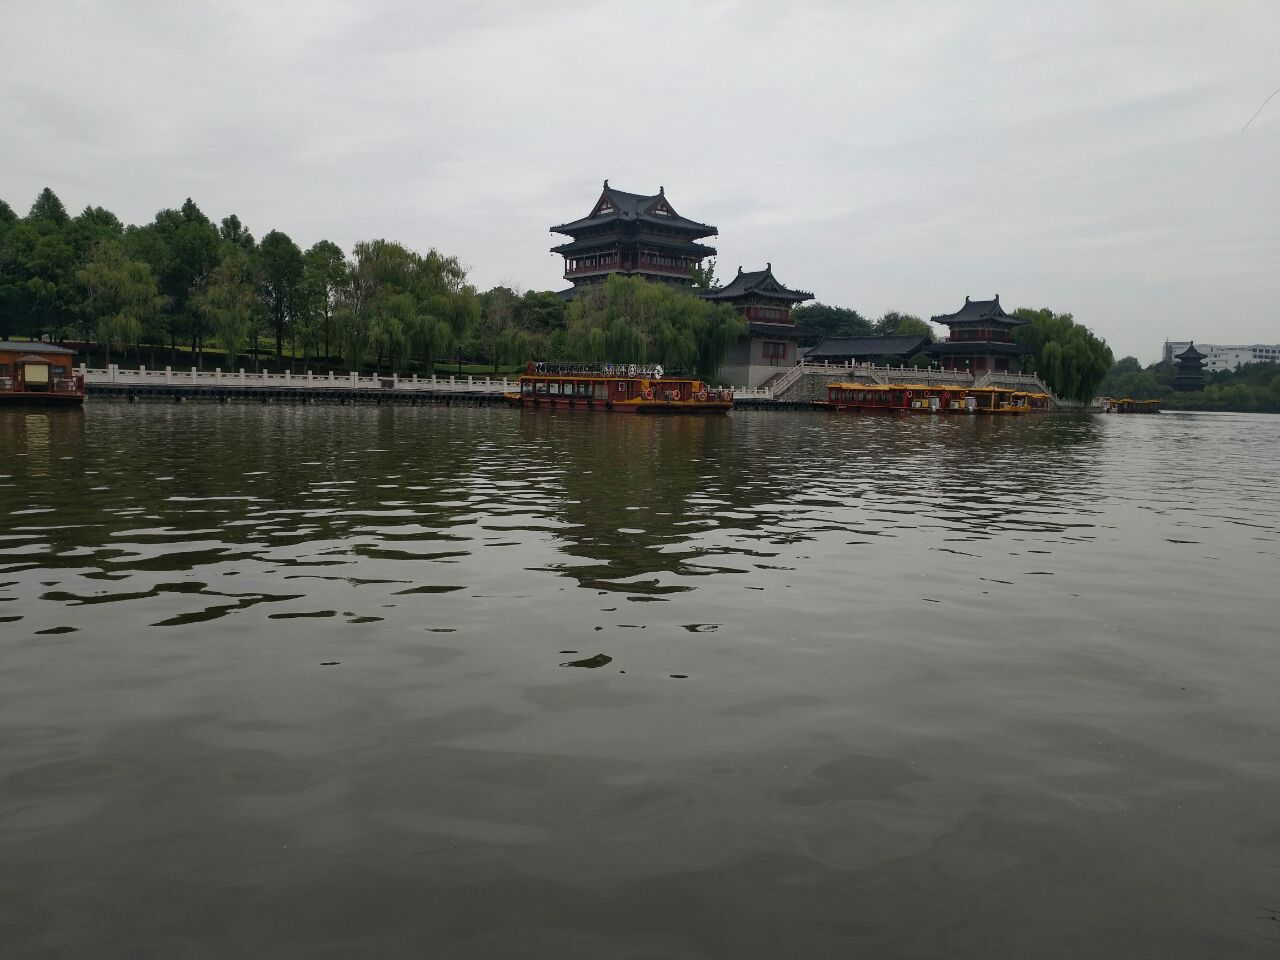 凤城河景区是泰州最值得一去的旅游目的地,是一个半式的大型旅游